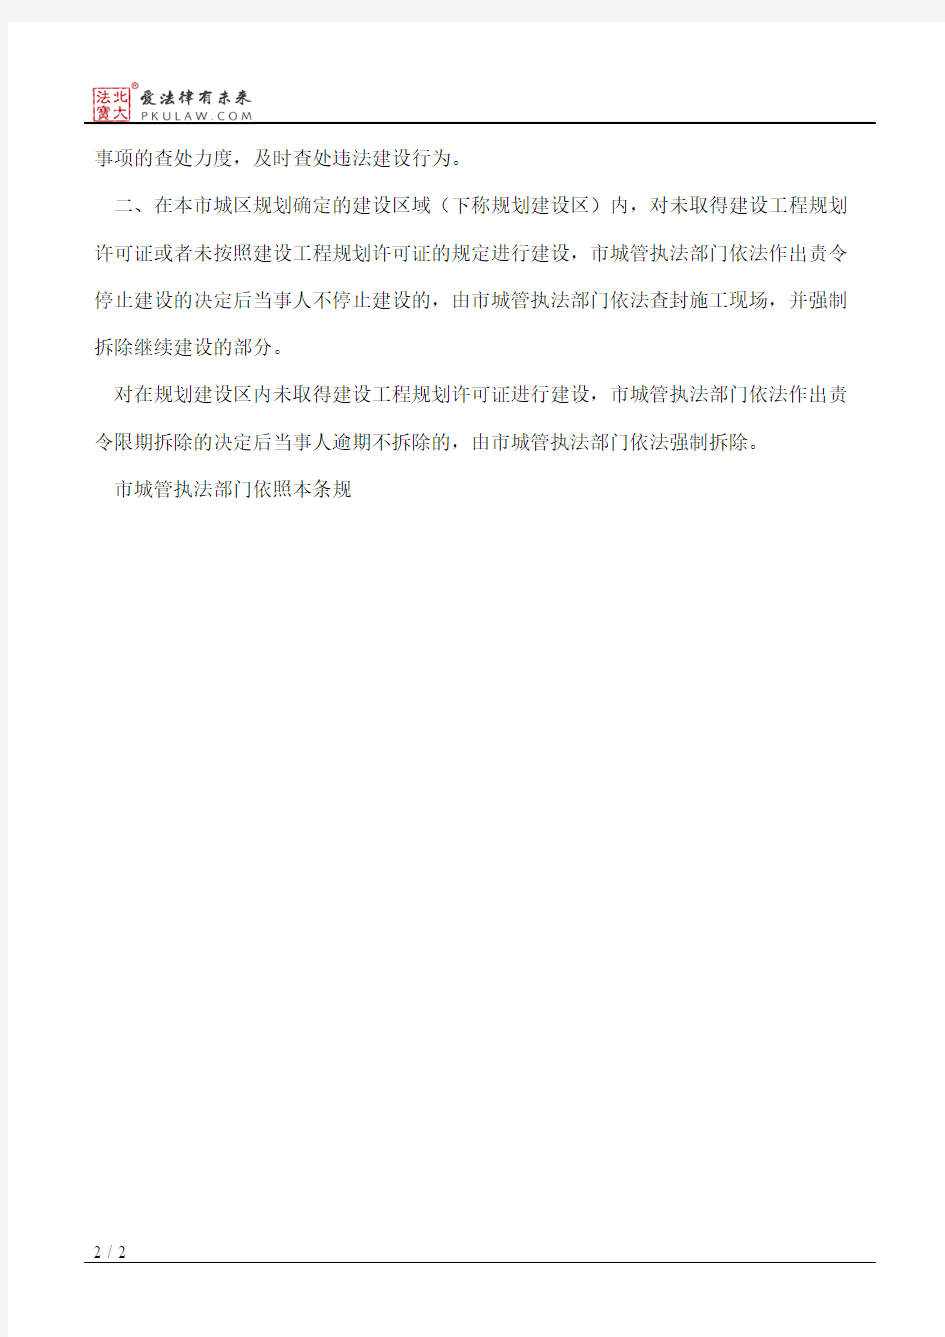 宜昌市人民政府办公室关于依法实施规划强制措施有效纠正违法建设